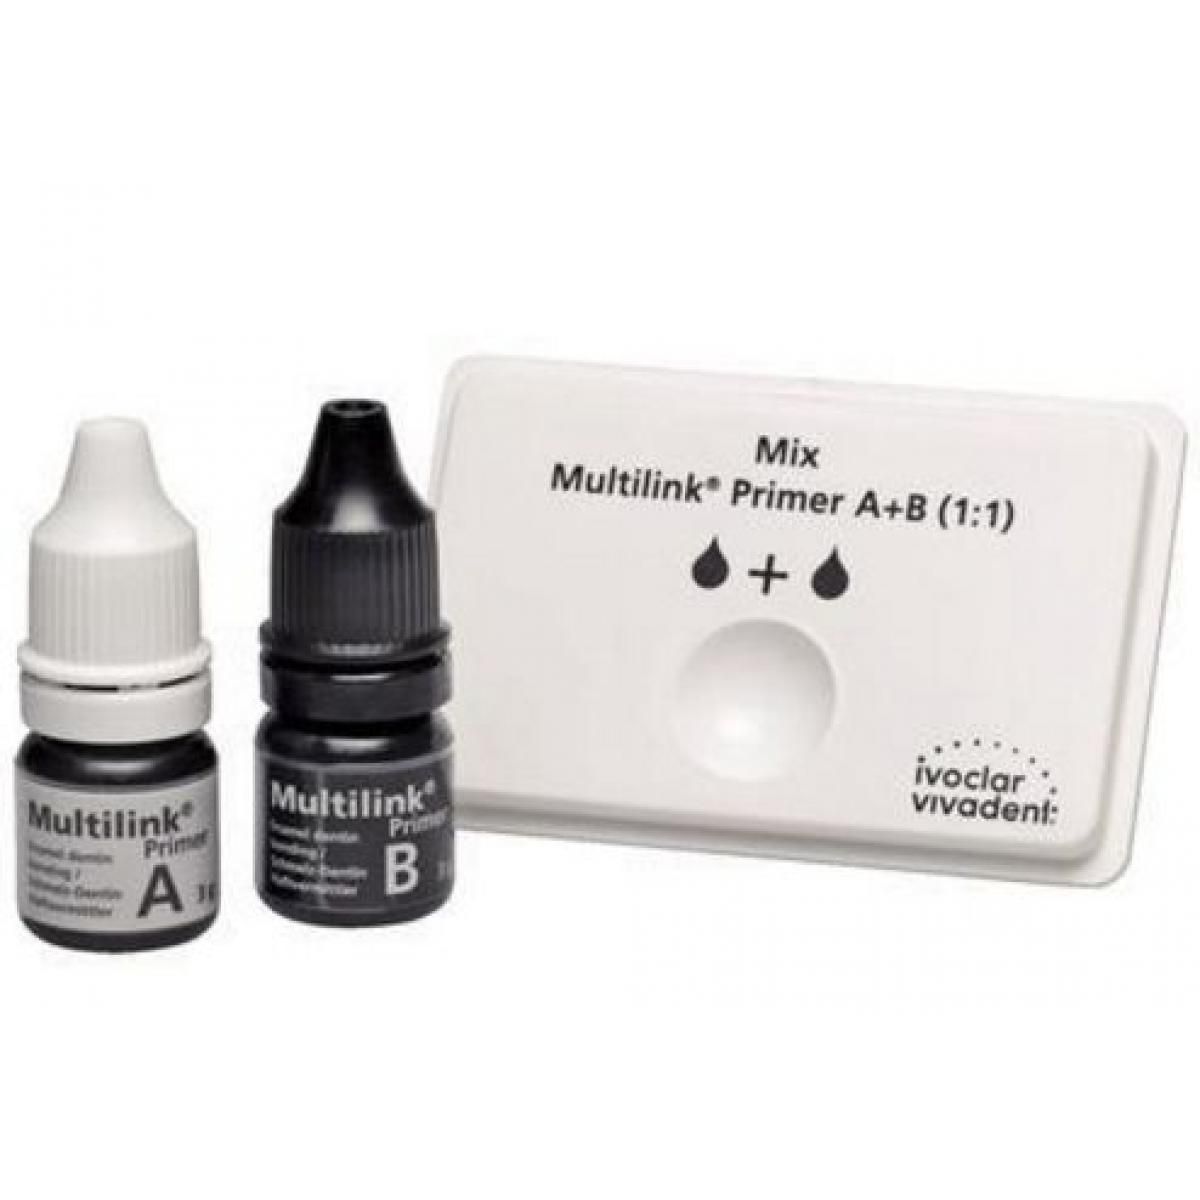 MULTILINK PRIMER A B 2X3G IVOCLAR -